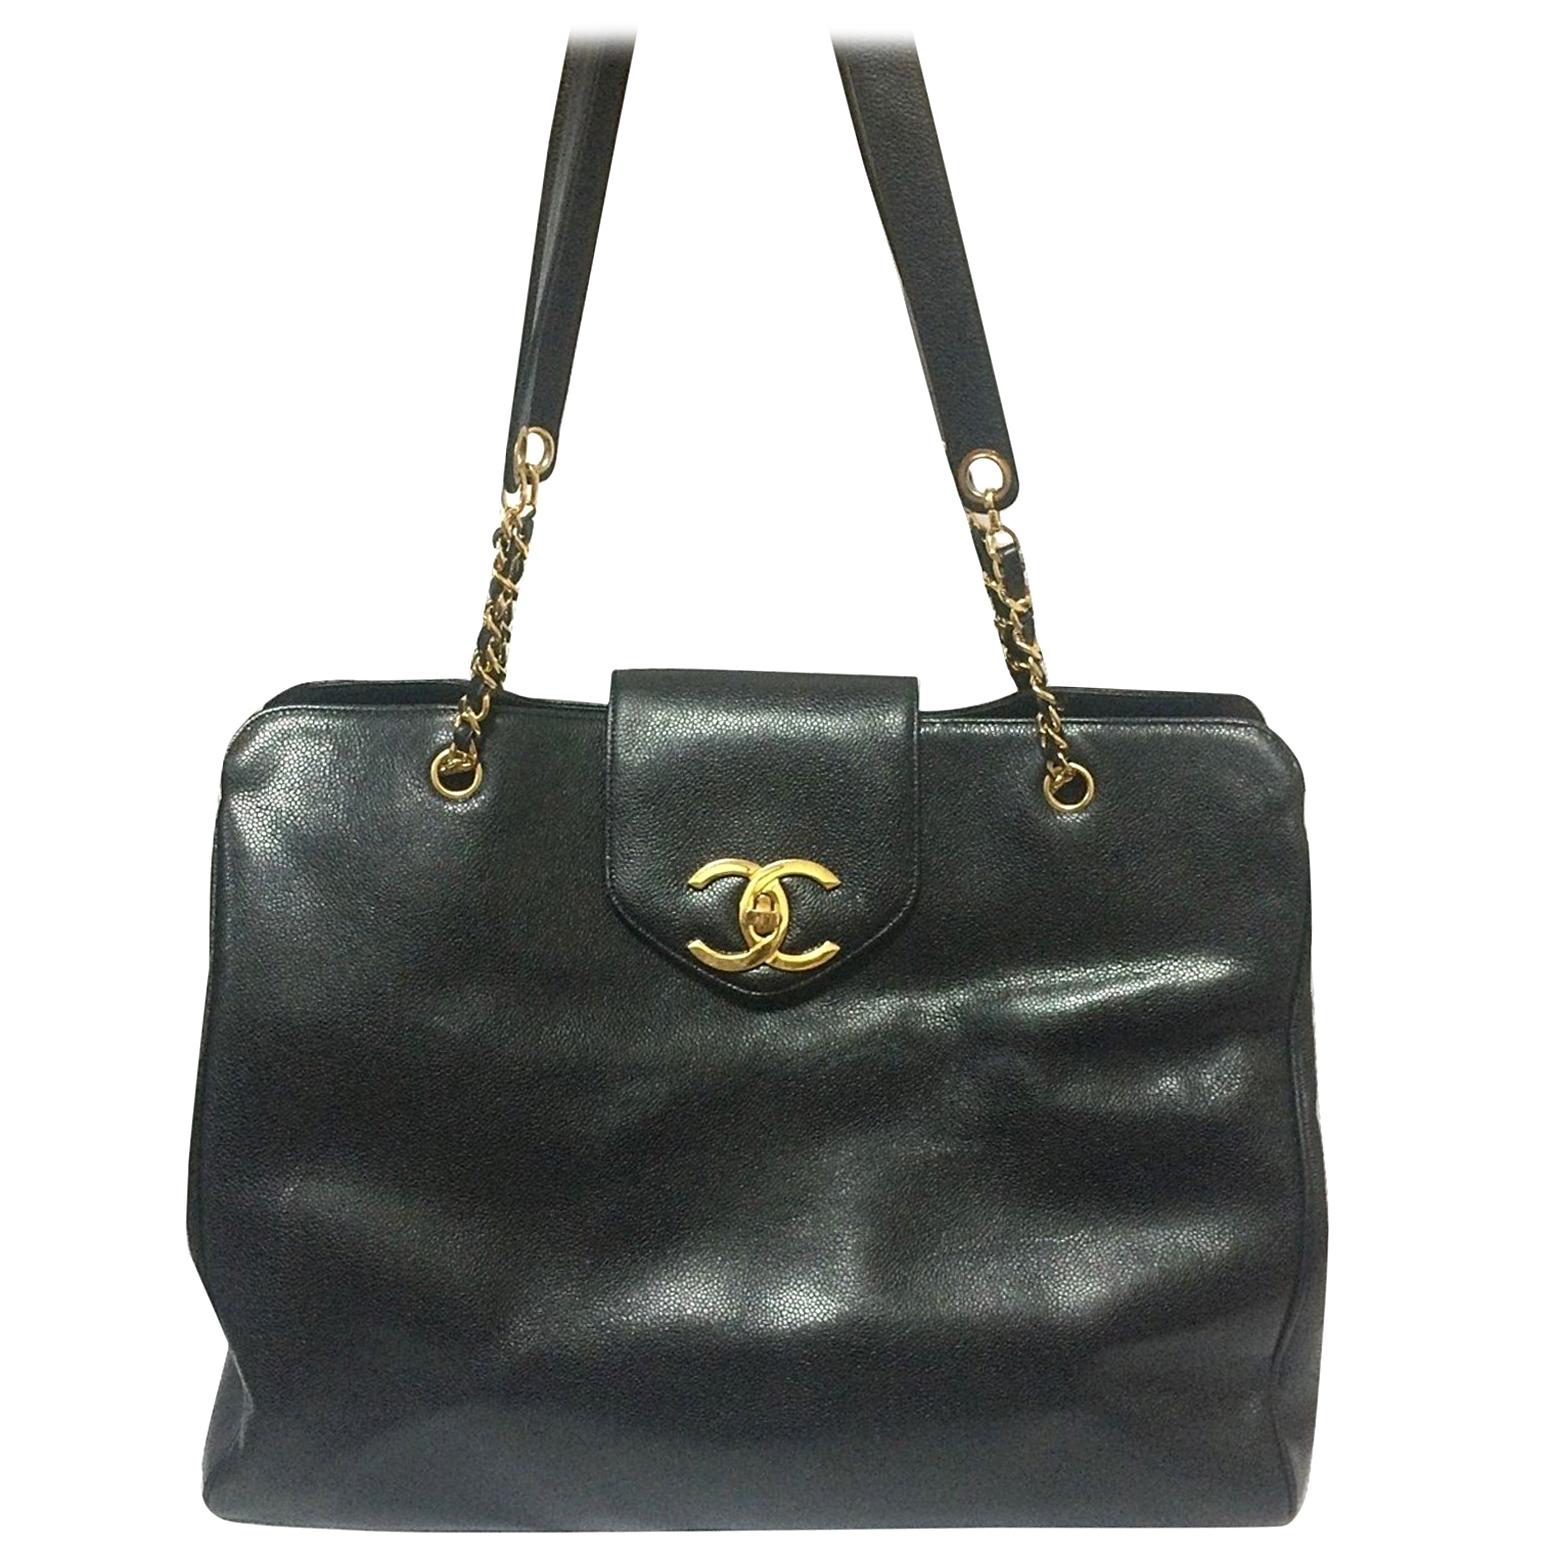 Vintage CHANEL black caviar leather Overnighter, Weekender bag, large chain bag.